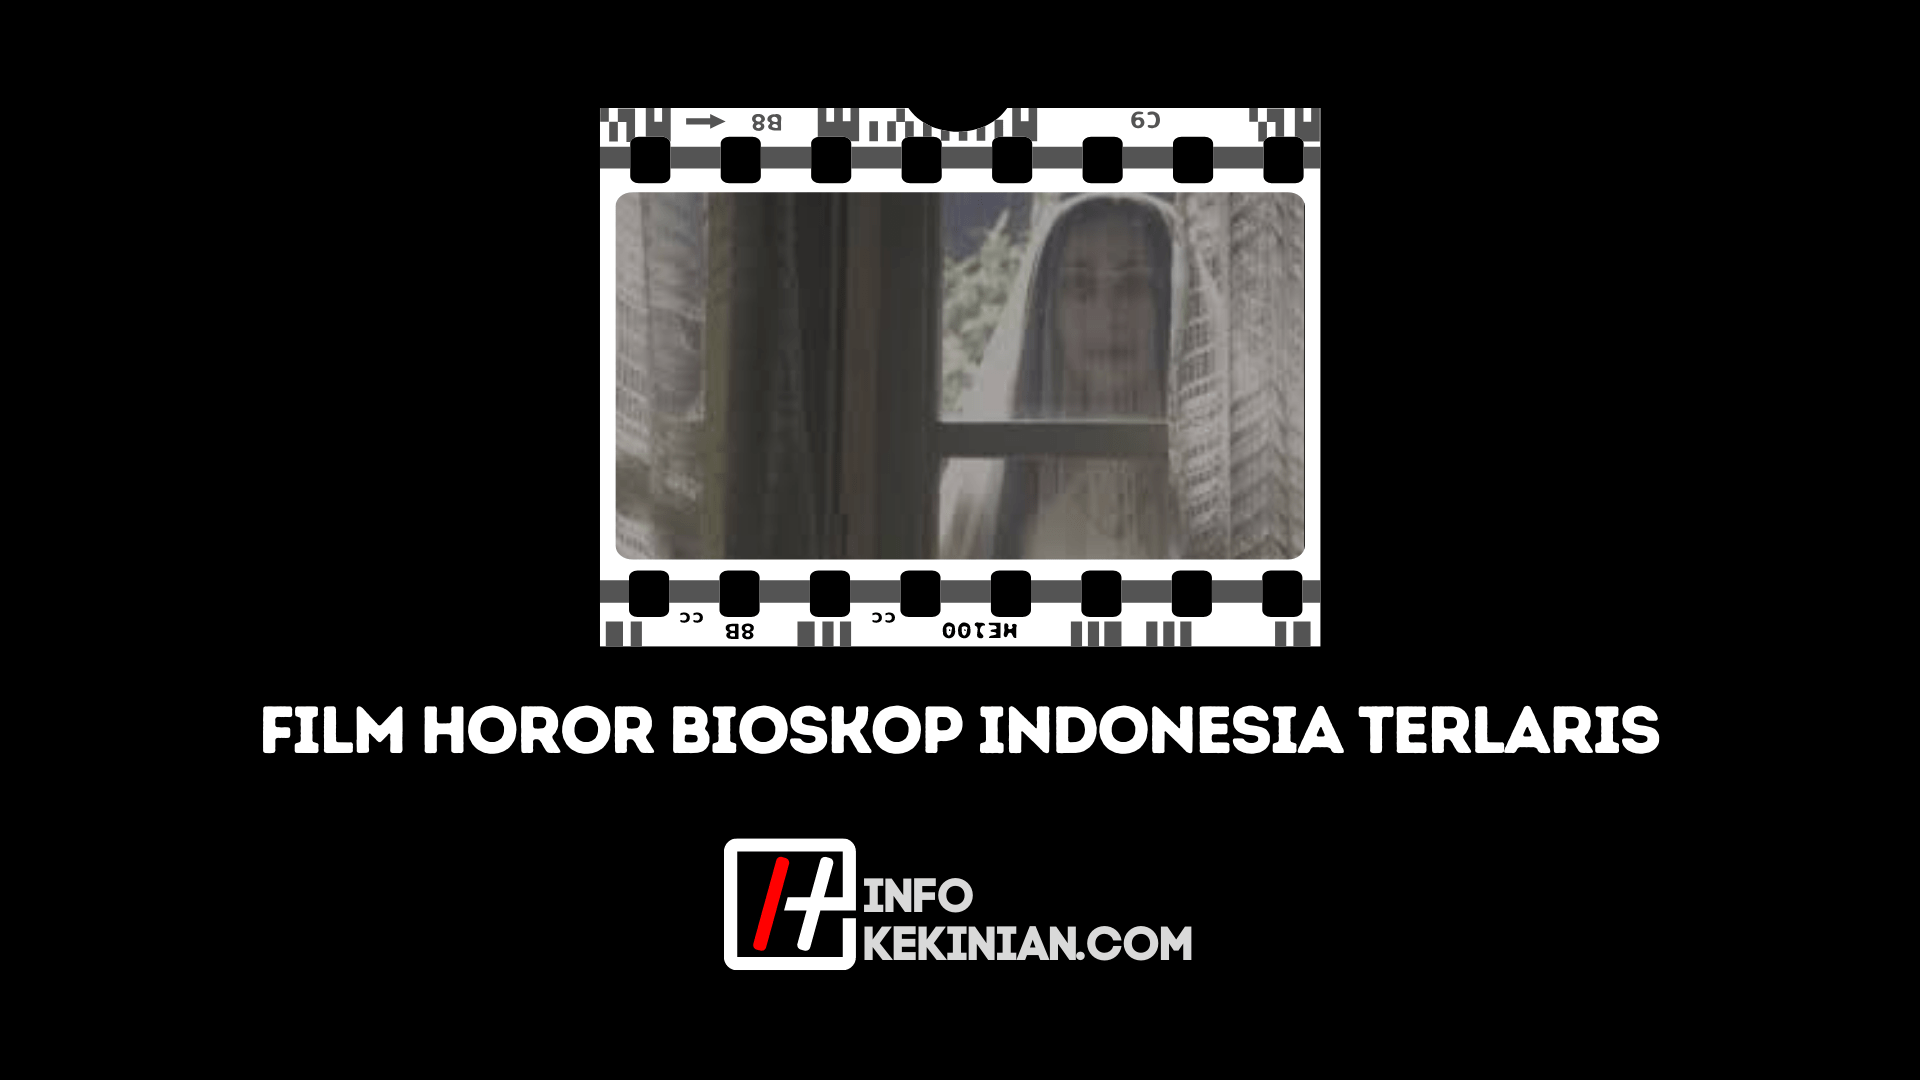 Daftar 5 Film Horor Terlaris Indonesia